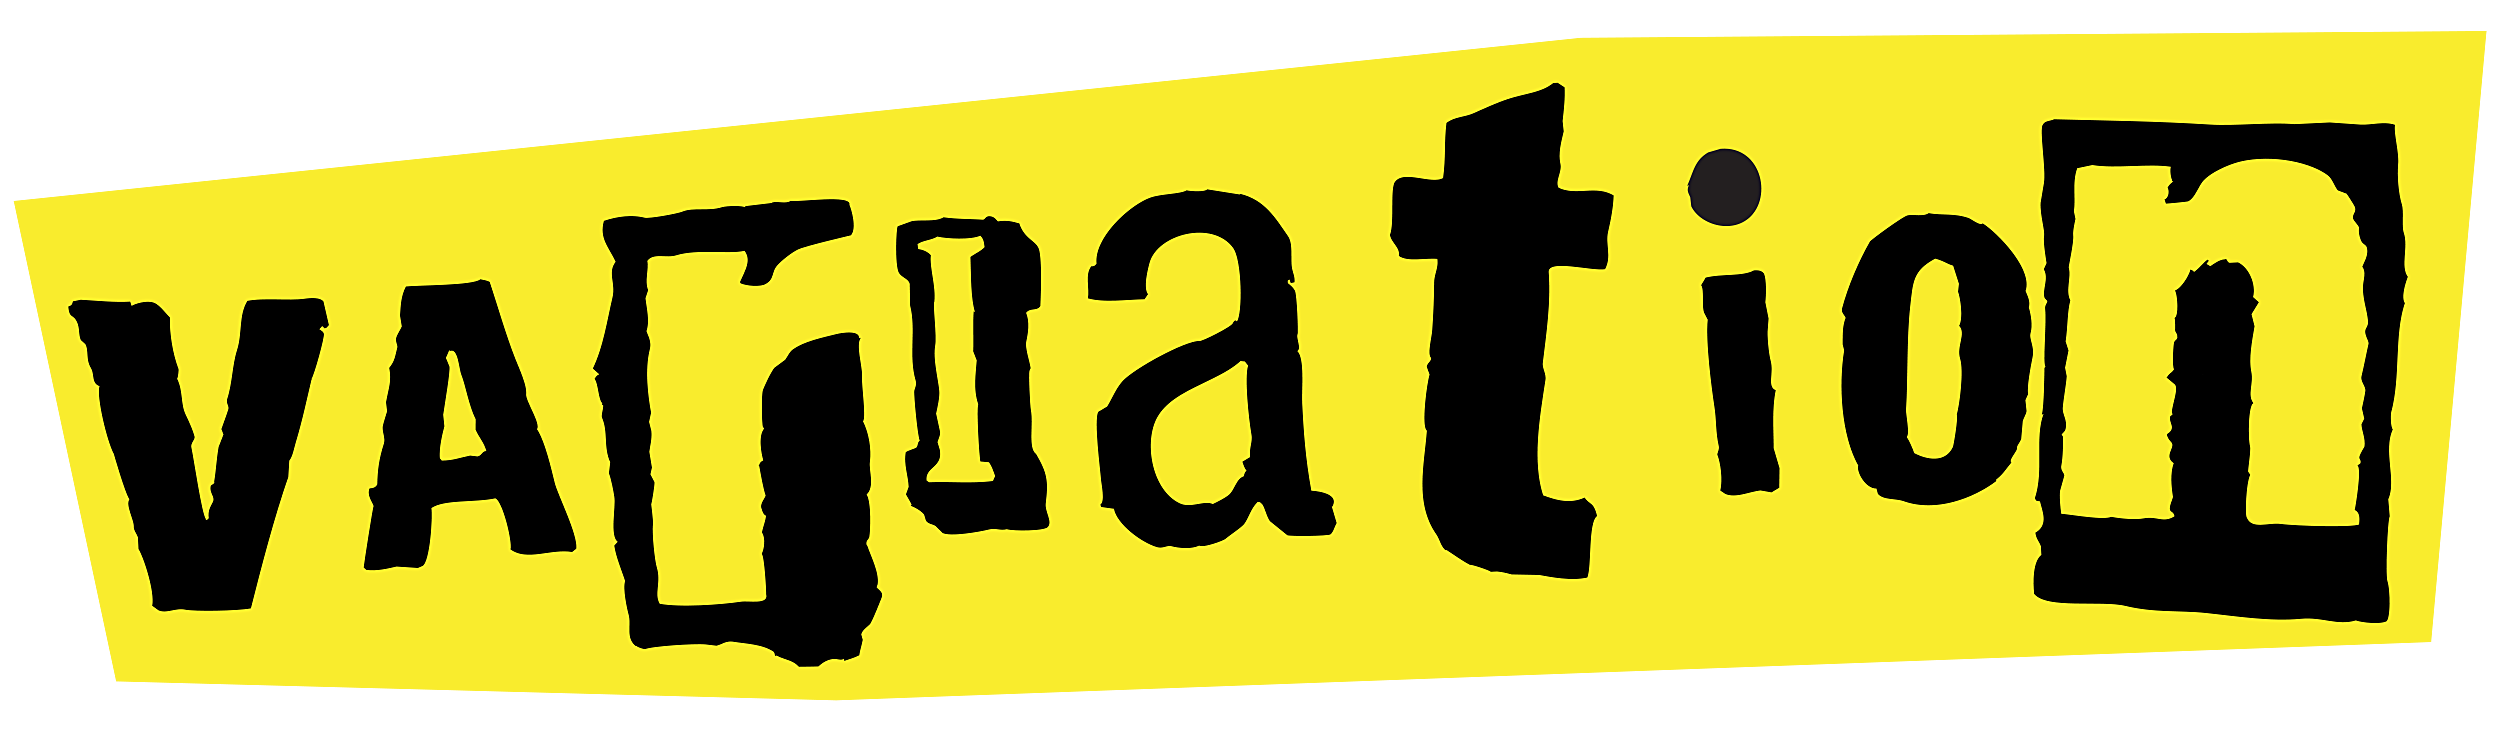 Variation logo